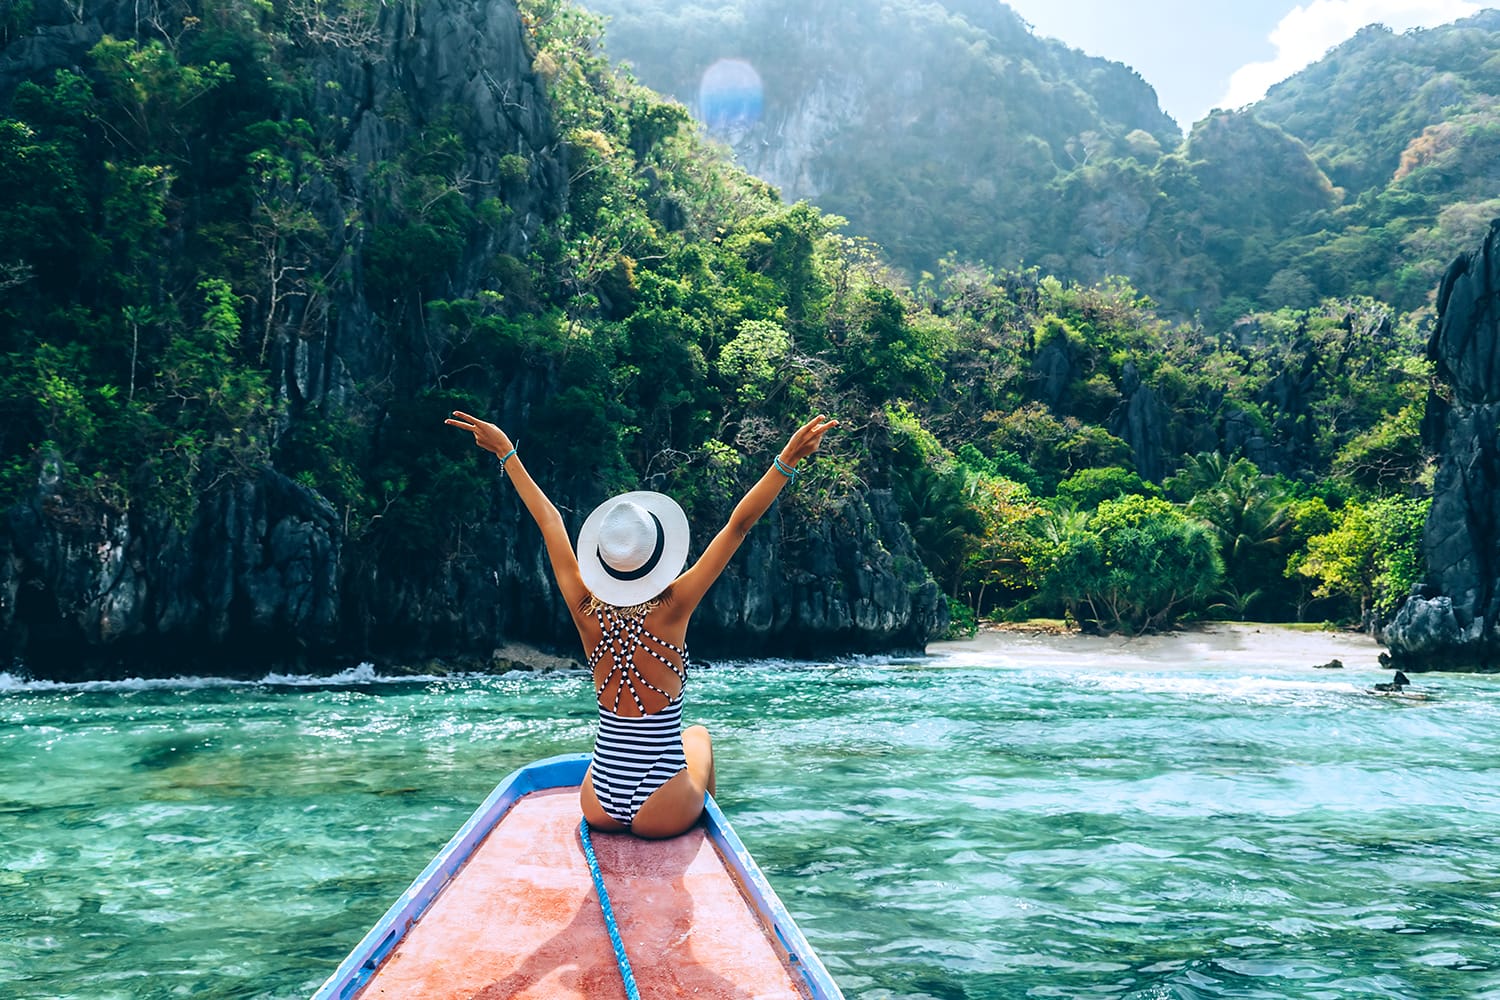 Πίσω όψη της νεαρής γυναίκας με καπέλο που χαλαρώνει στη βάρκα και κοιτάζει το νησί. Ταξιδιωτική περιήγηση στην Ασία: El Nido, Palawan, Φιλιππίνες